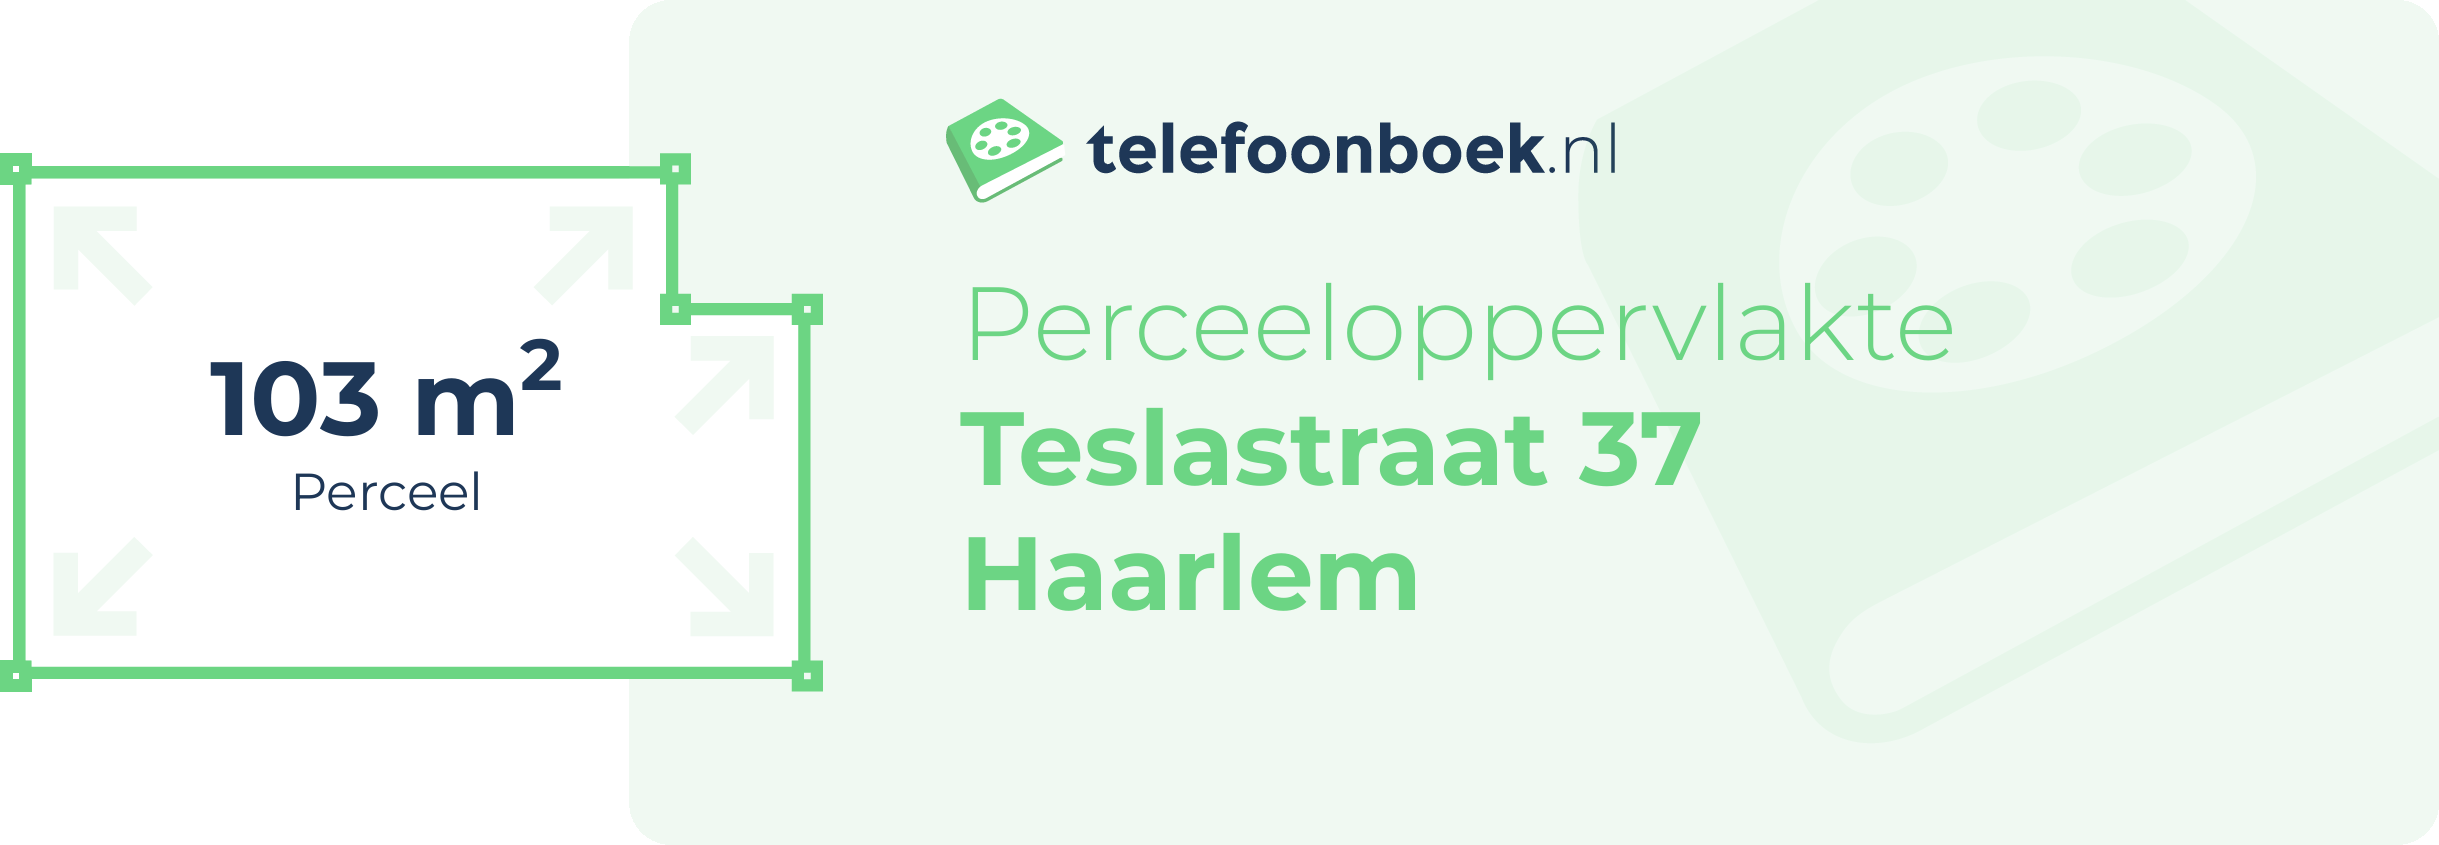 Perceeloppervlakte Teslastraat 37 Haarlem